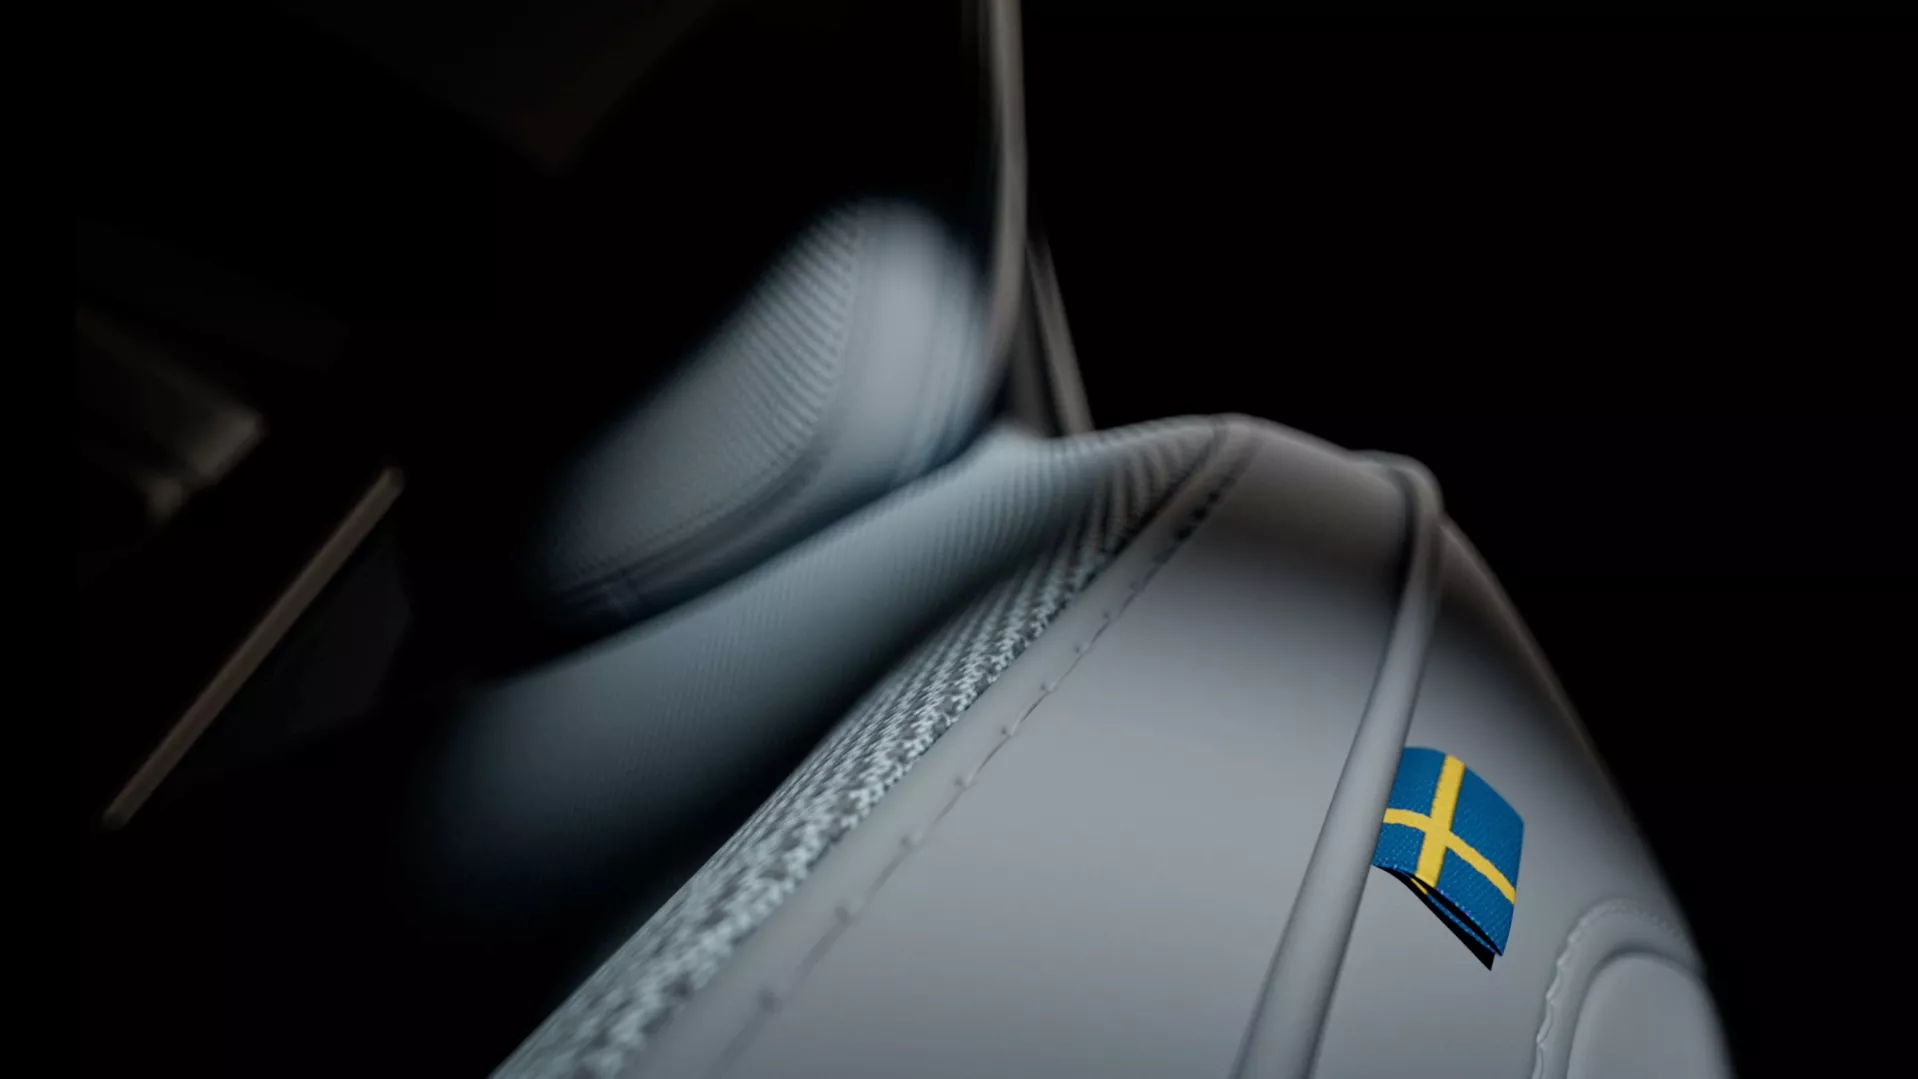 Detalhe do banco, com bandeira sueca